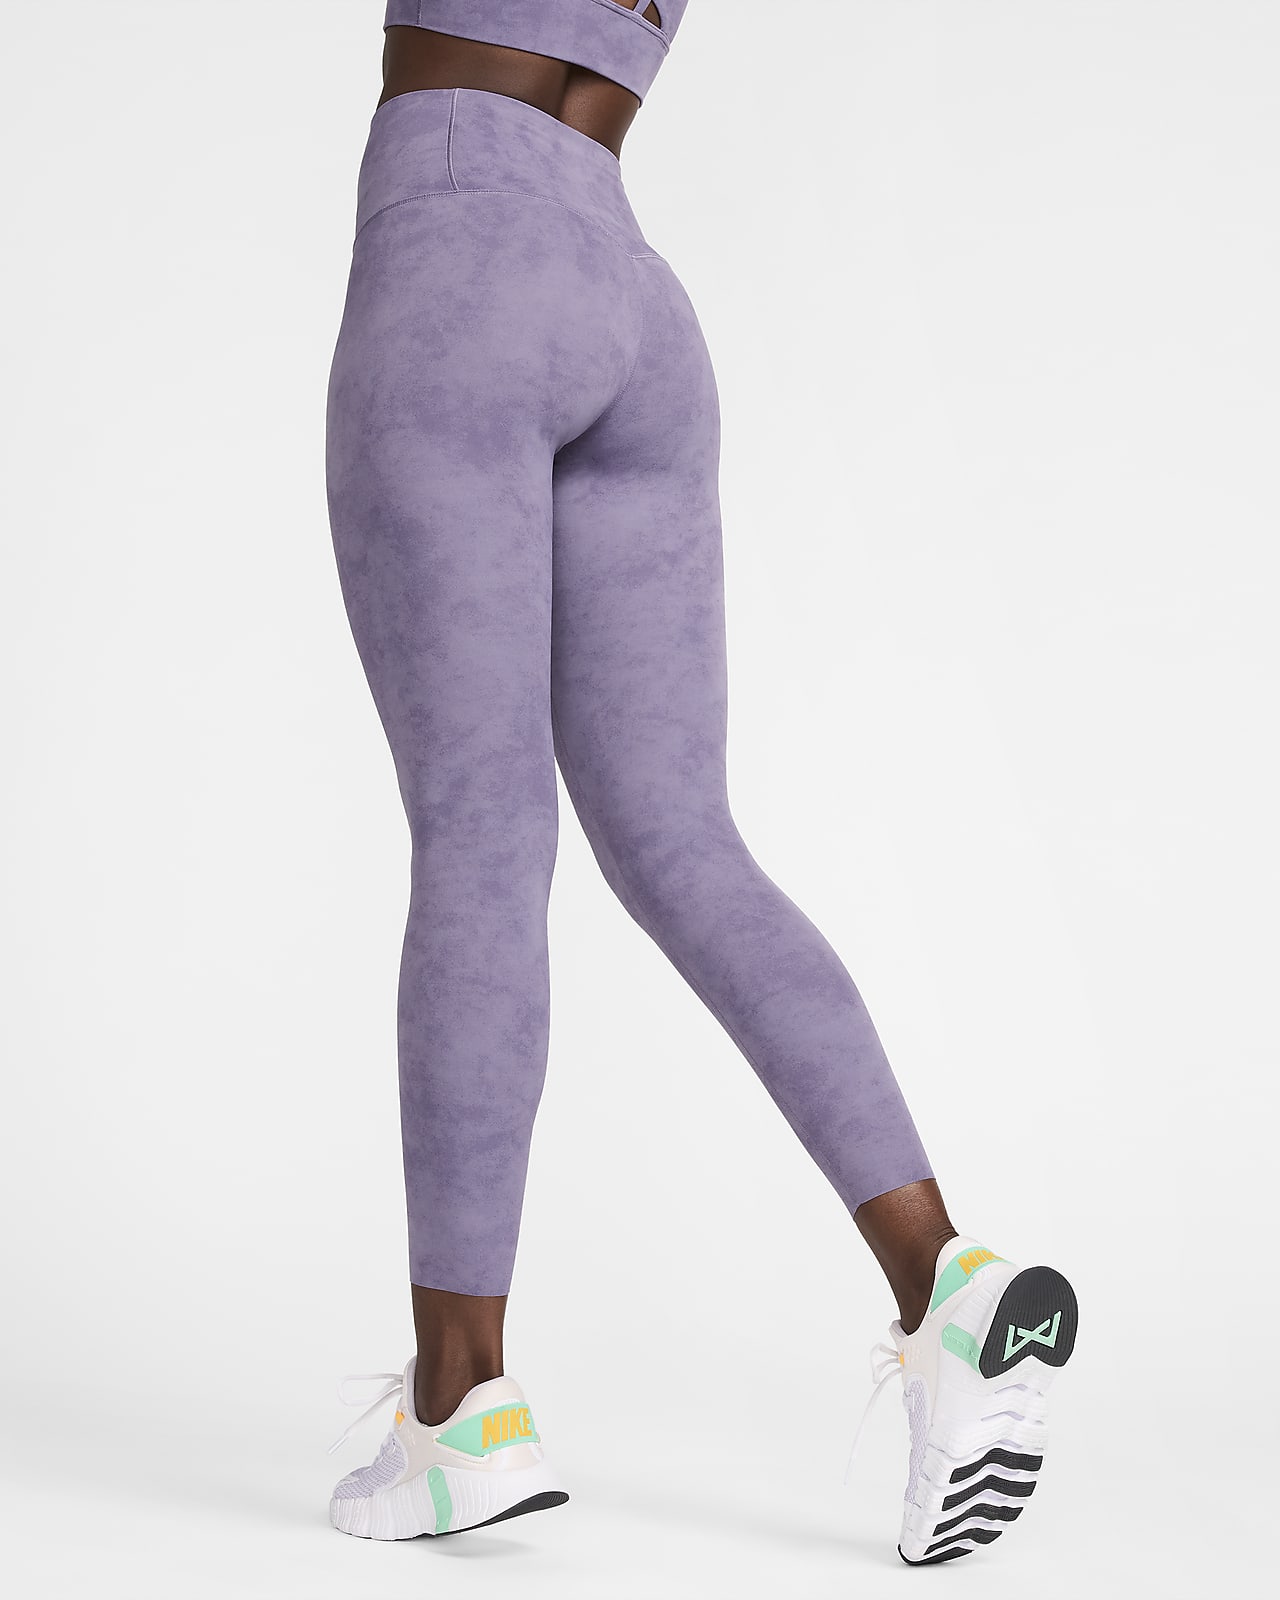 Nike Zenvy Tie-Dye Women's Gentle-Support High-Waisted 7/8 Leggings. Nike FI